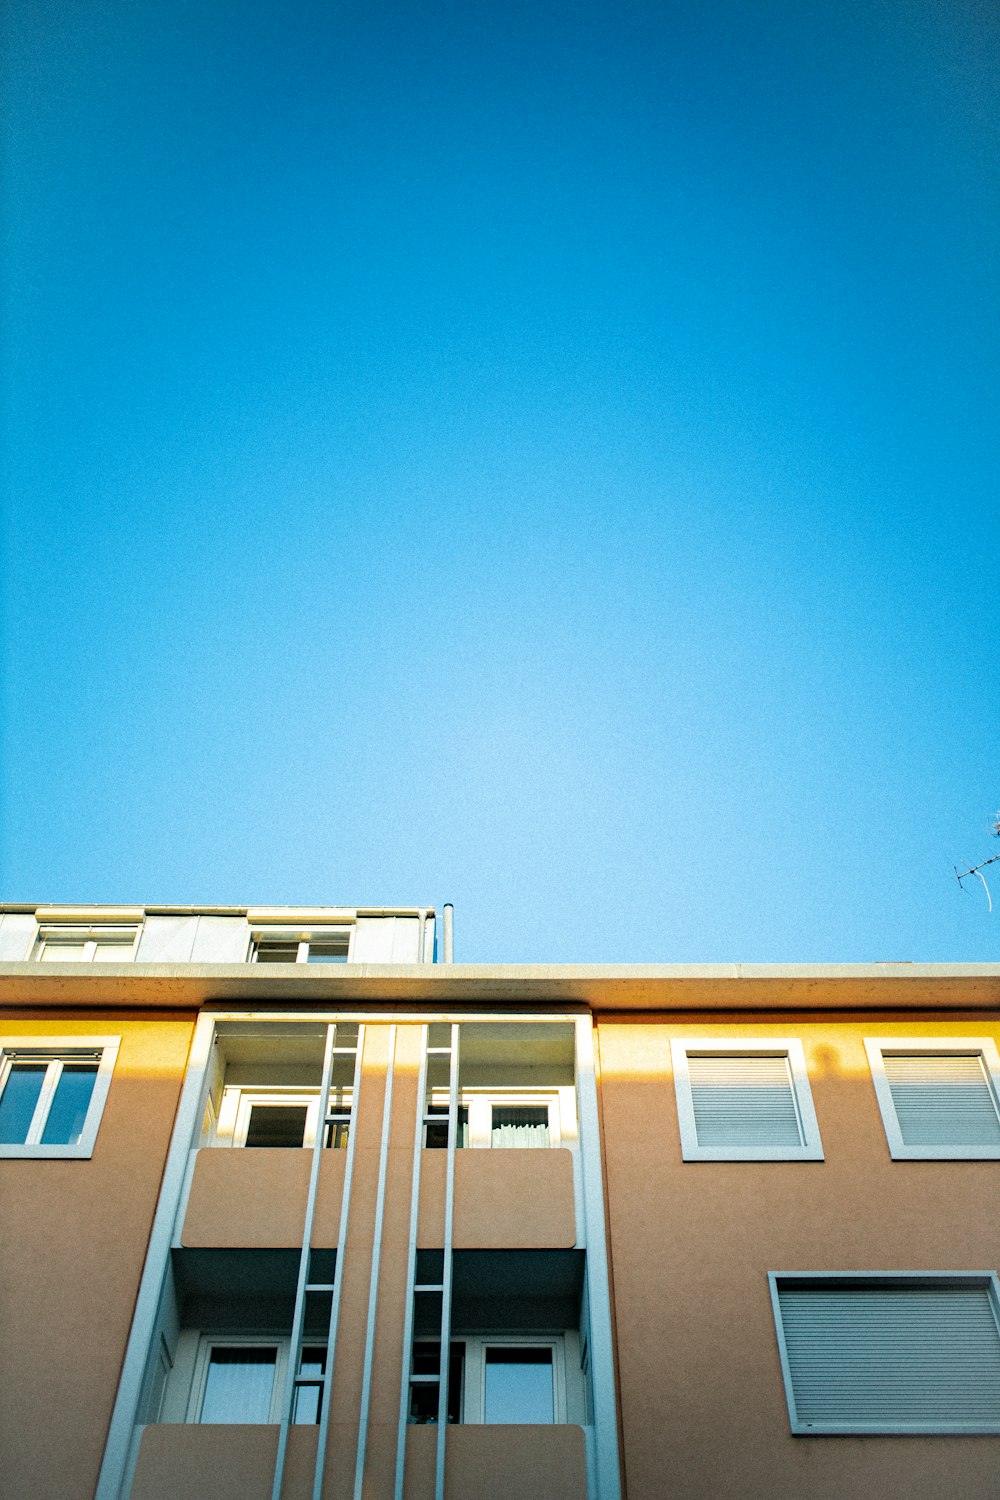 Casa de hormigón blanco y azul bajo el cielo azul durante el día